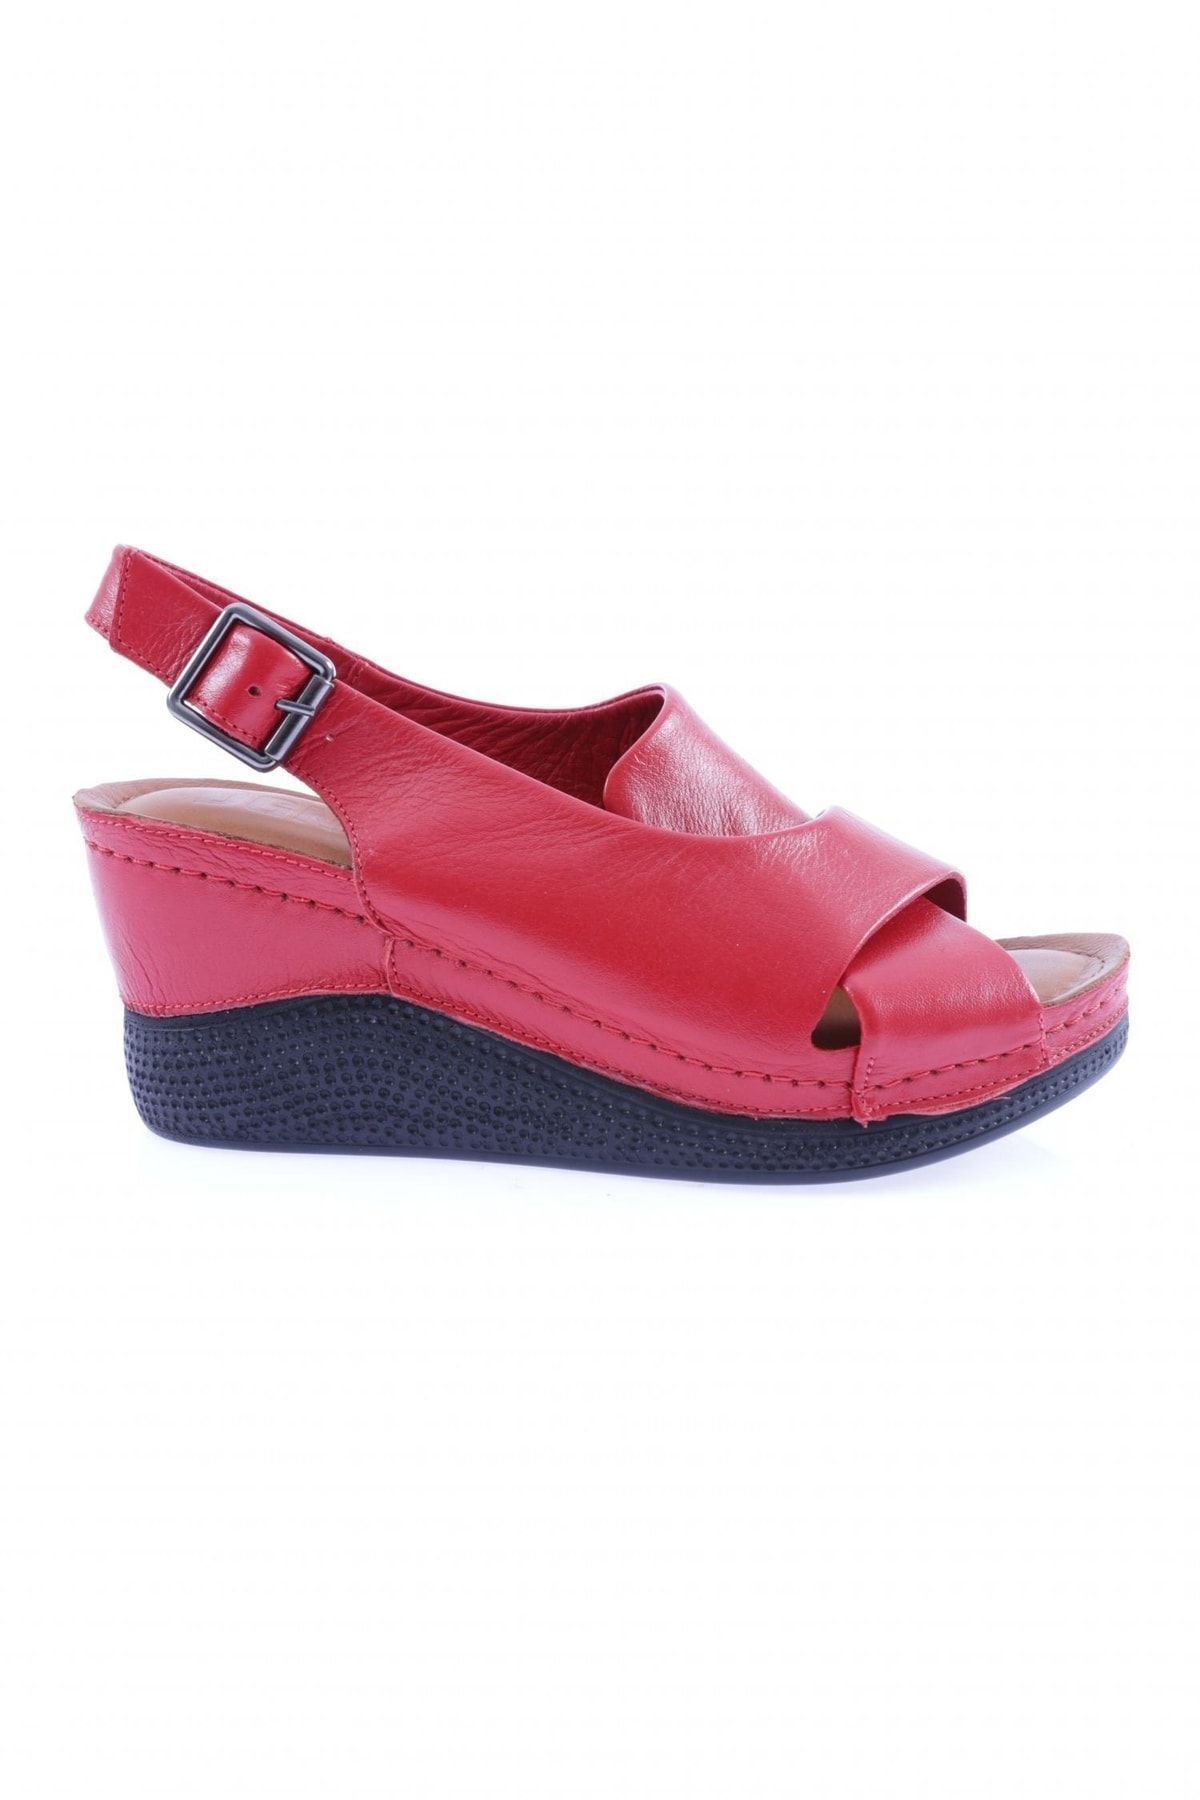 Dgn 6107 Kadın Çapraz Bantlı Kalın Taban Sandalet Hakiki Deri Kırmızı